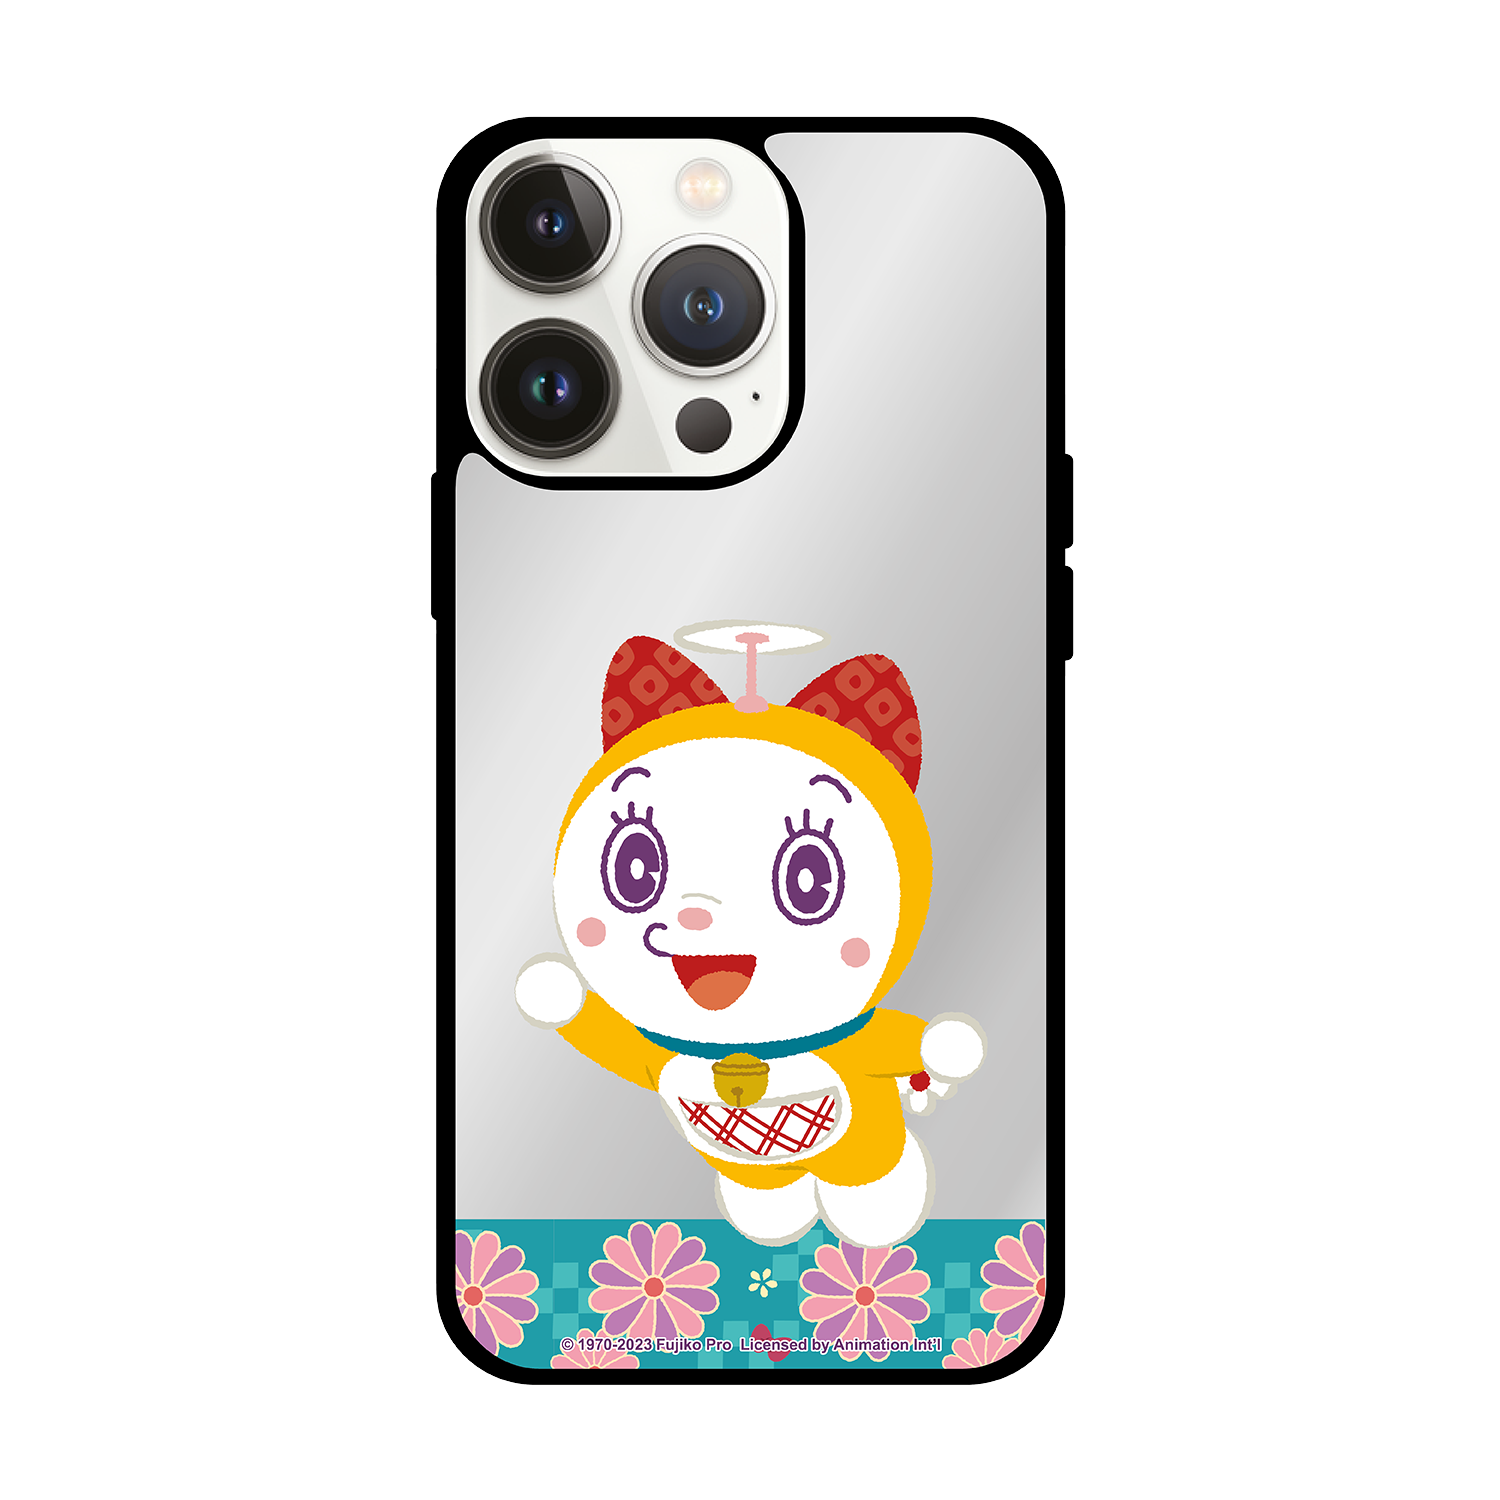 Doraemon 多啦A夢 iPhone Mirror Case / Samsung Mirror Case (DO126M)